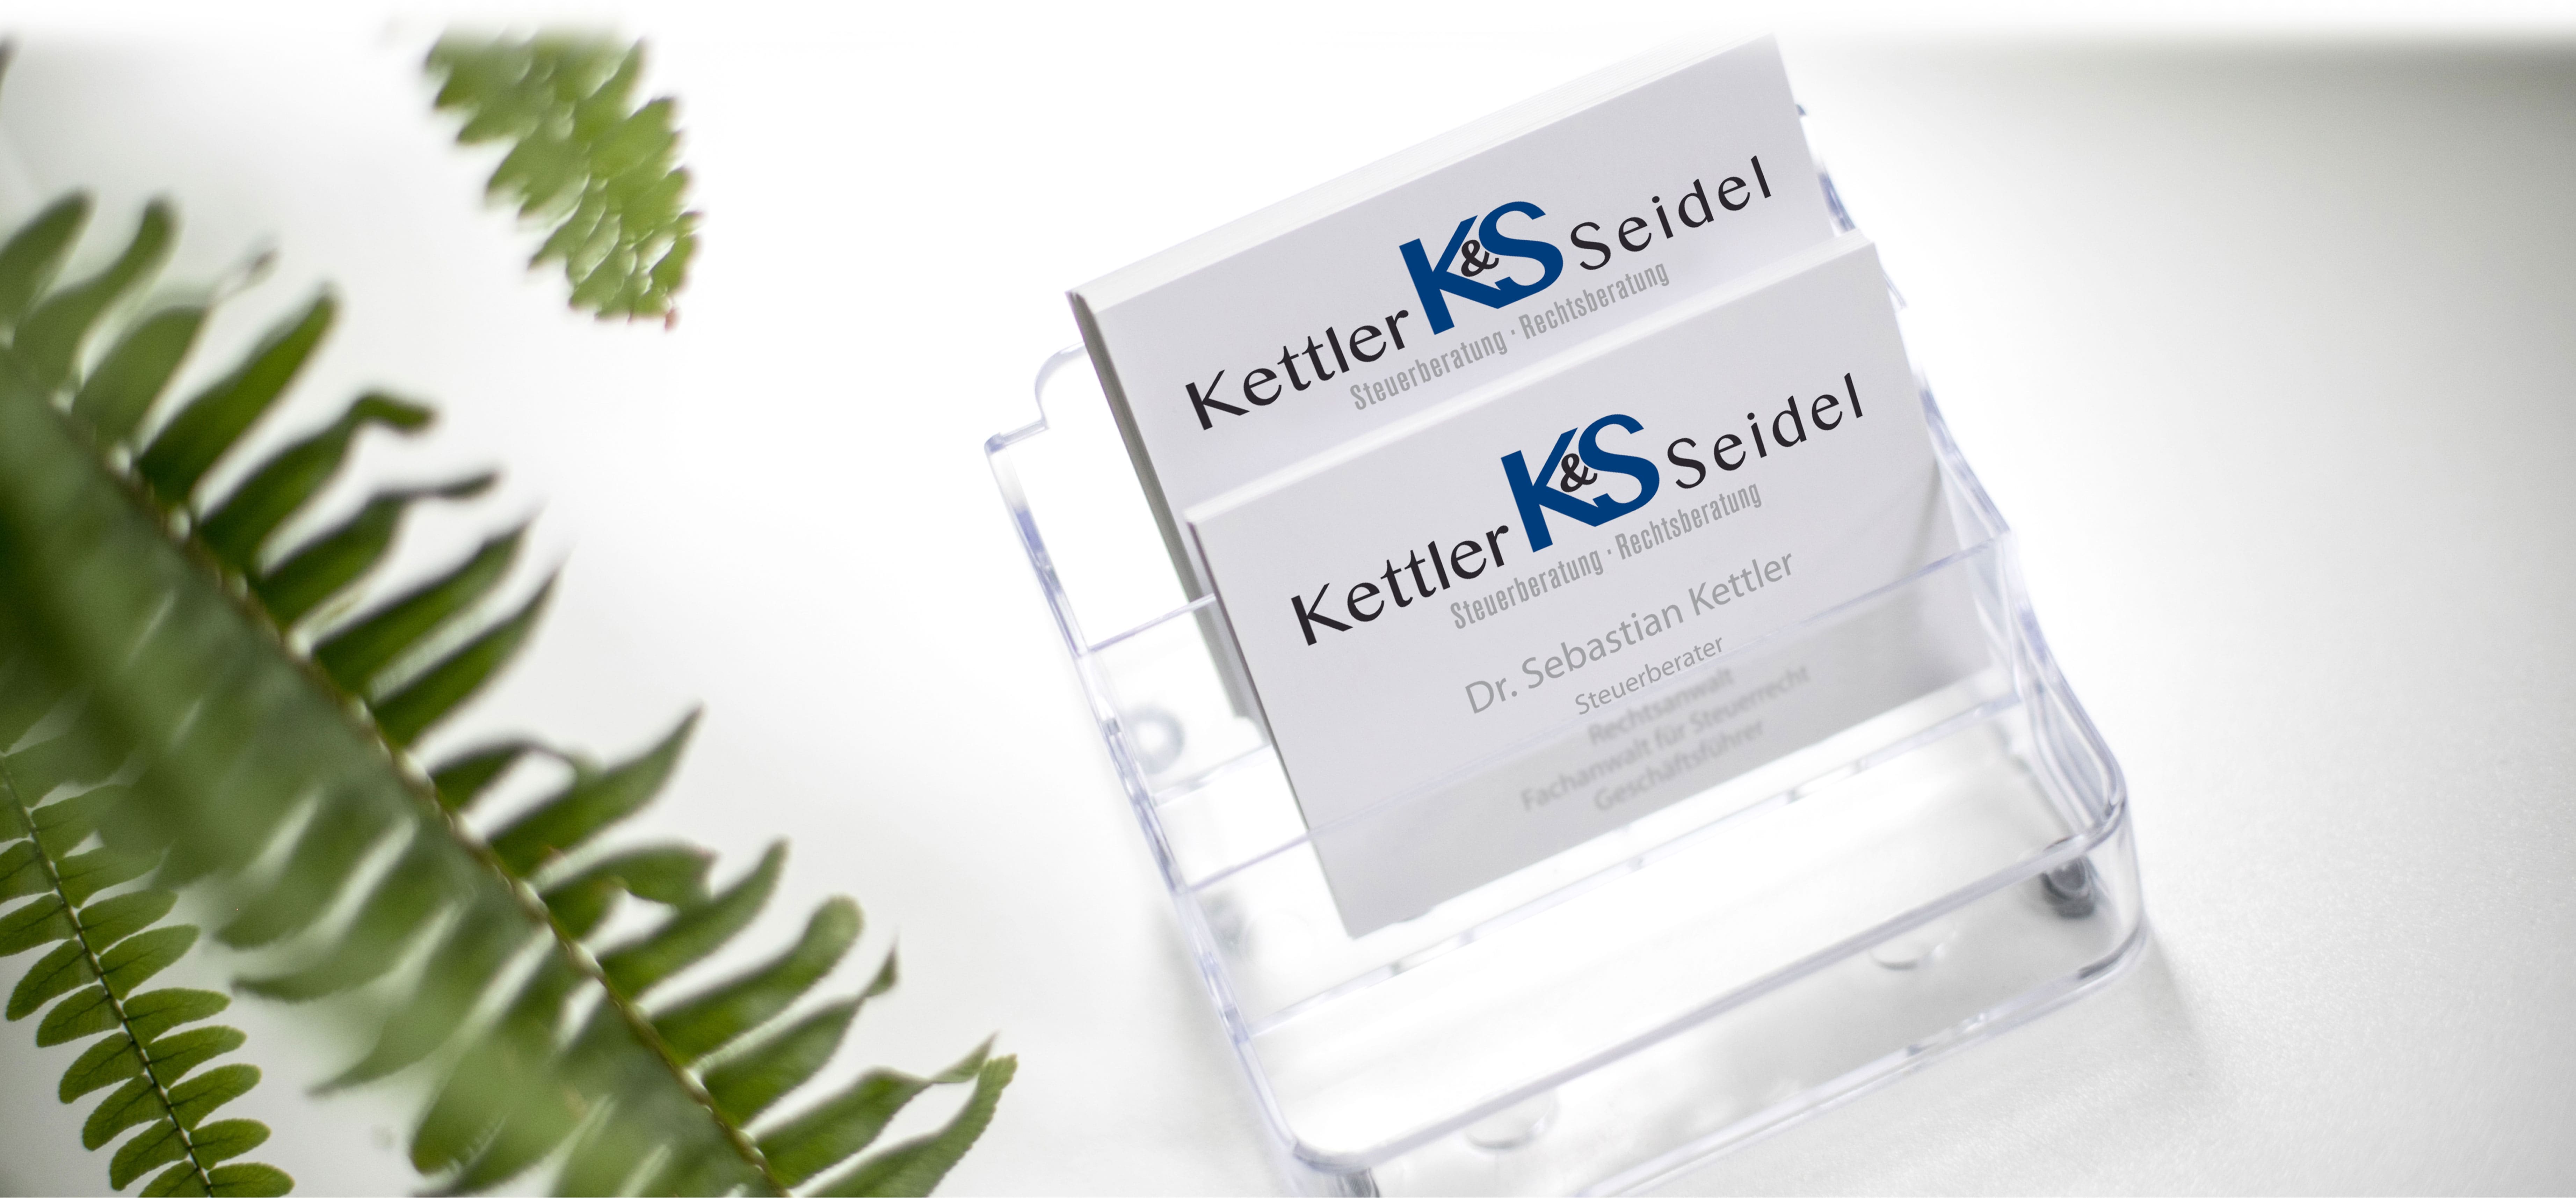 Kettler & Seidel GmbH